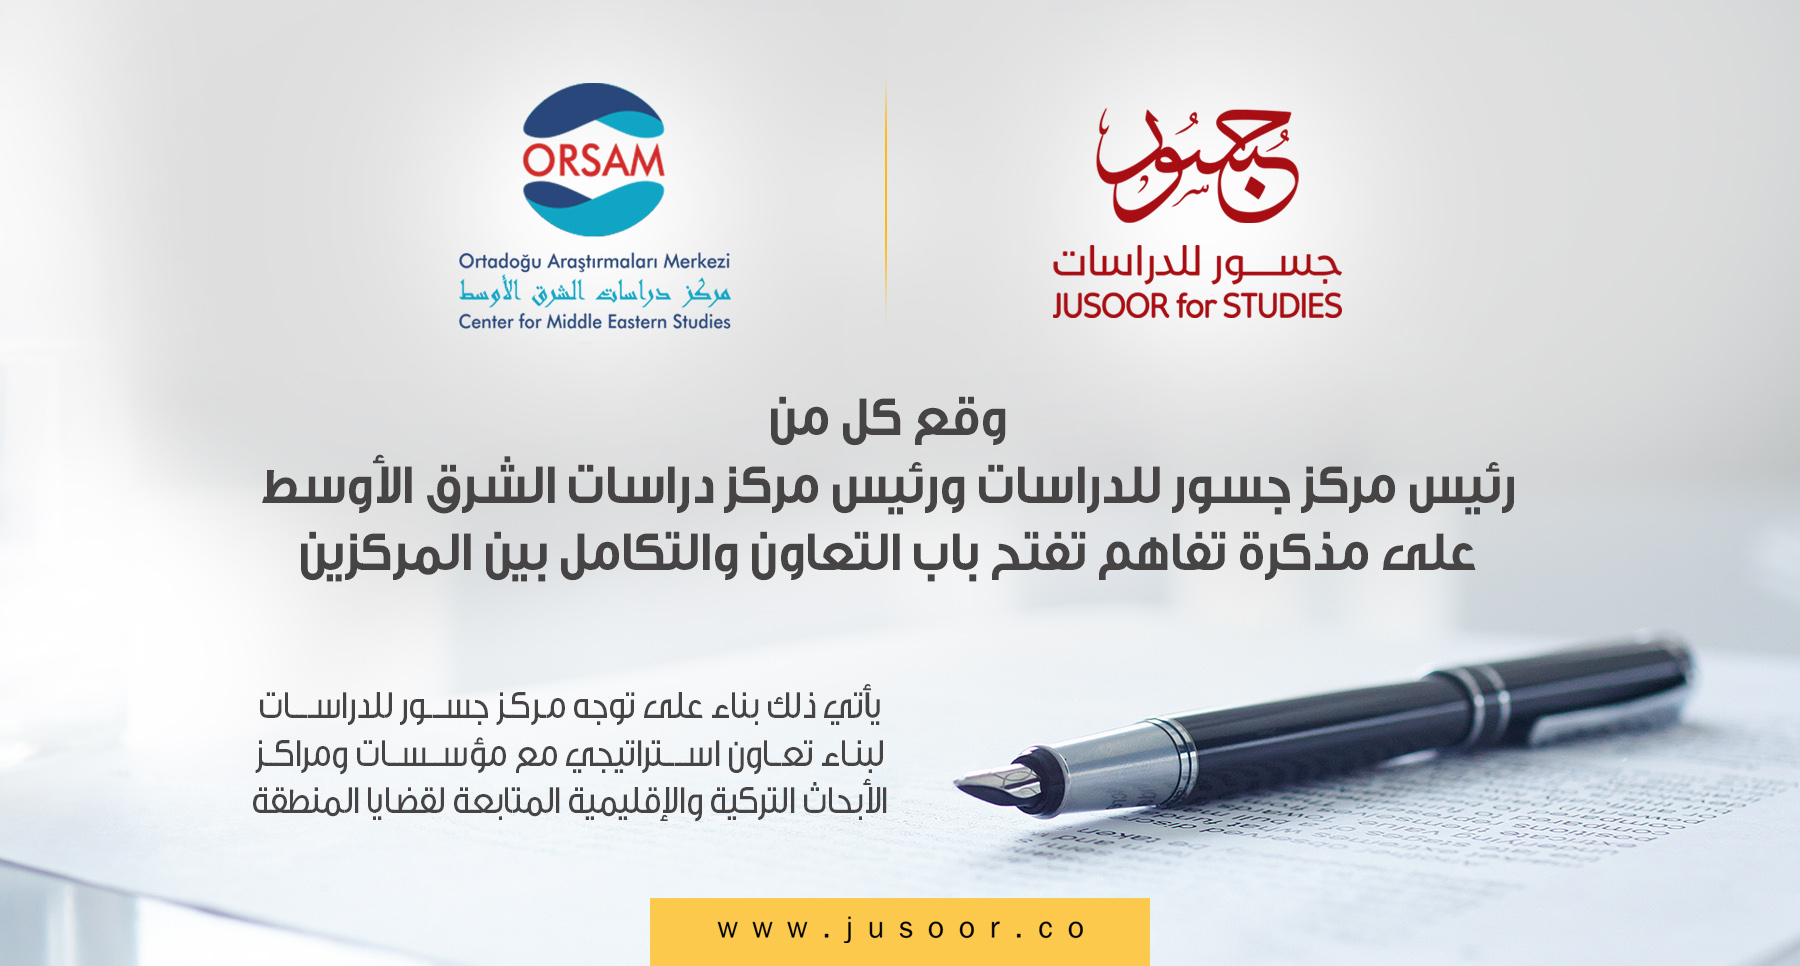  وثيقة تفاهم بين مركز جسور للدراسات ومركز دراسات الشرق الأوسط ORSAM